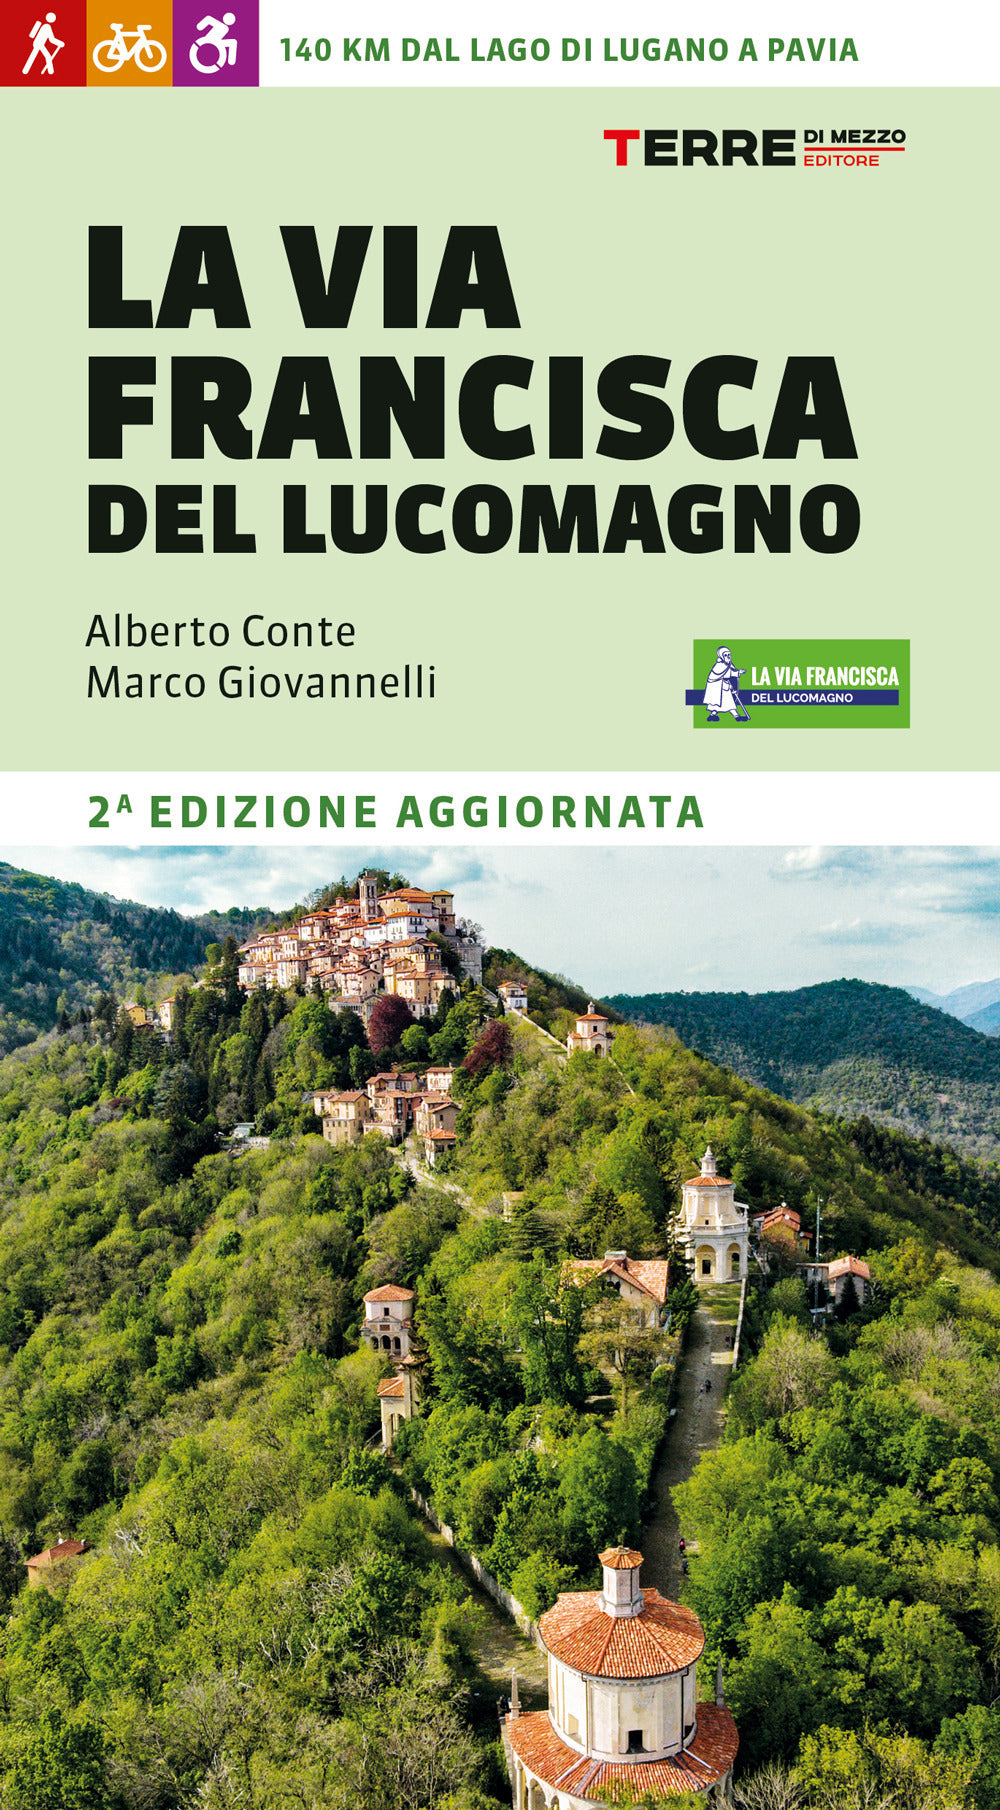 La Via Francisca del Lucomagno. 140 chilometri dal lago di Lugano a Pavia.